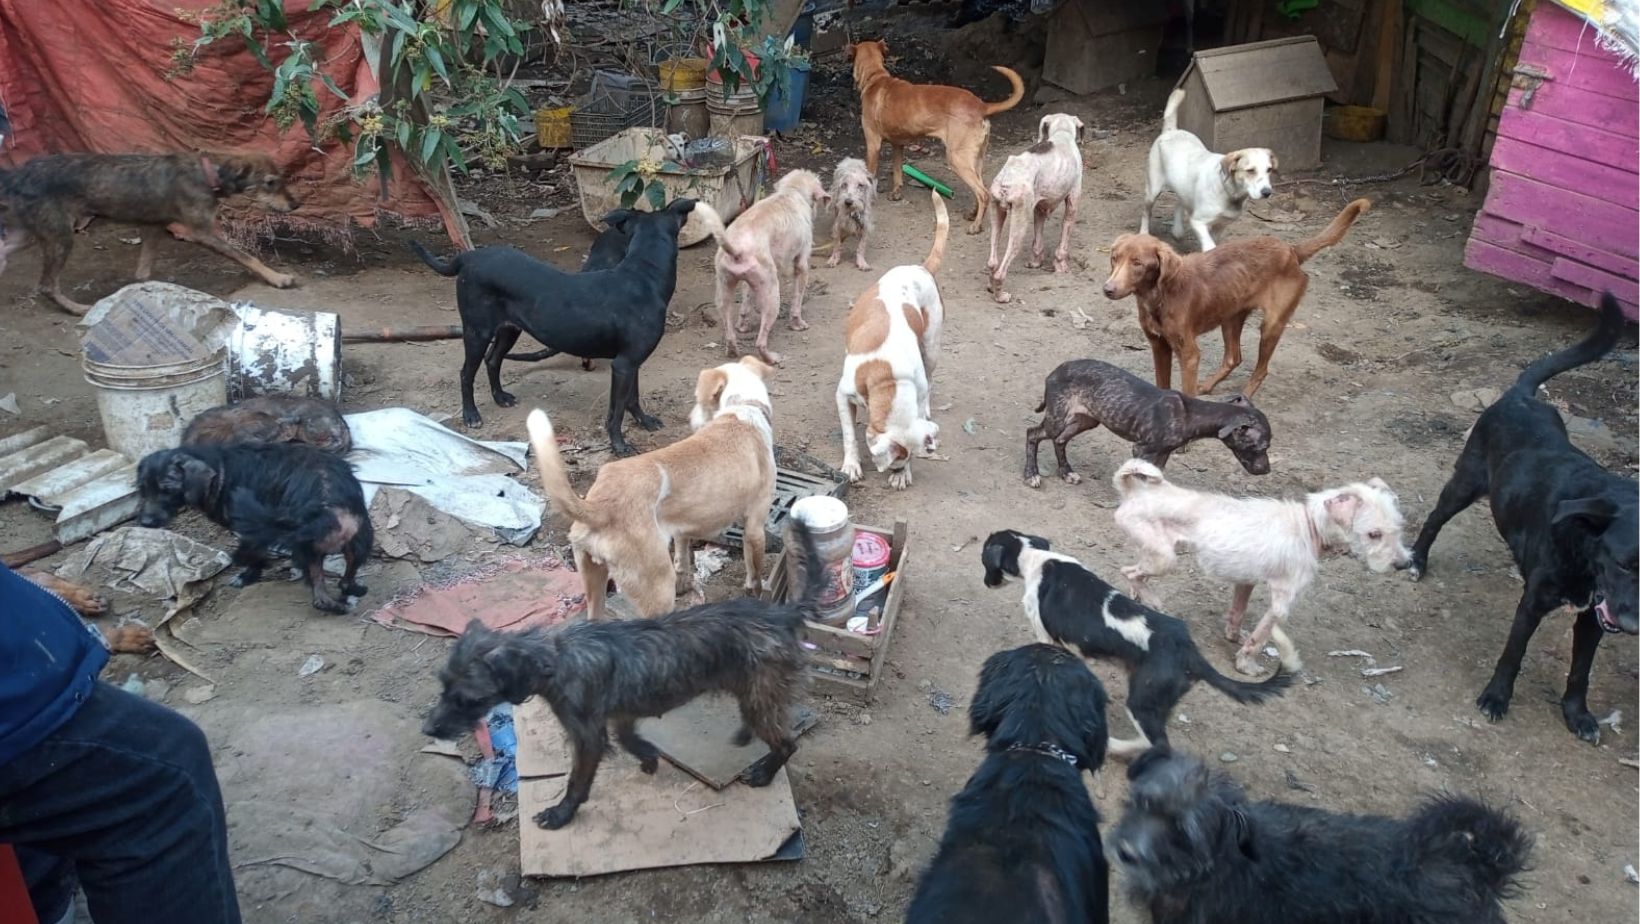 100 perros fueron rescatados de un predio en Topilejo donde sufrían maltrato y viv161an en condiciones deplorables.
(Foto: @PAOTmx)